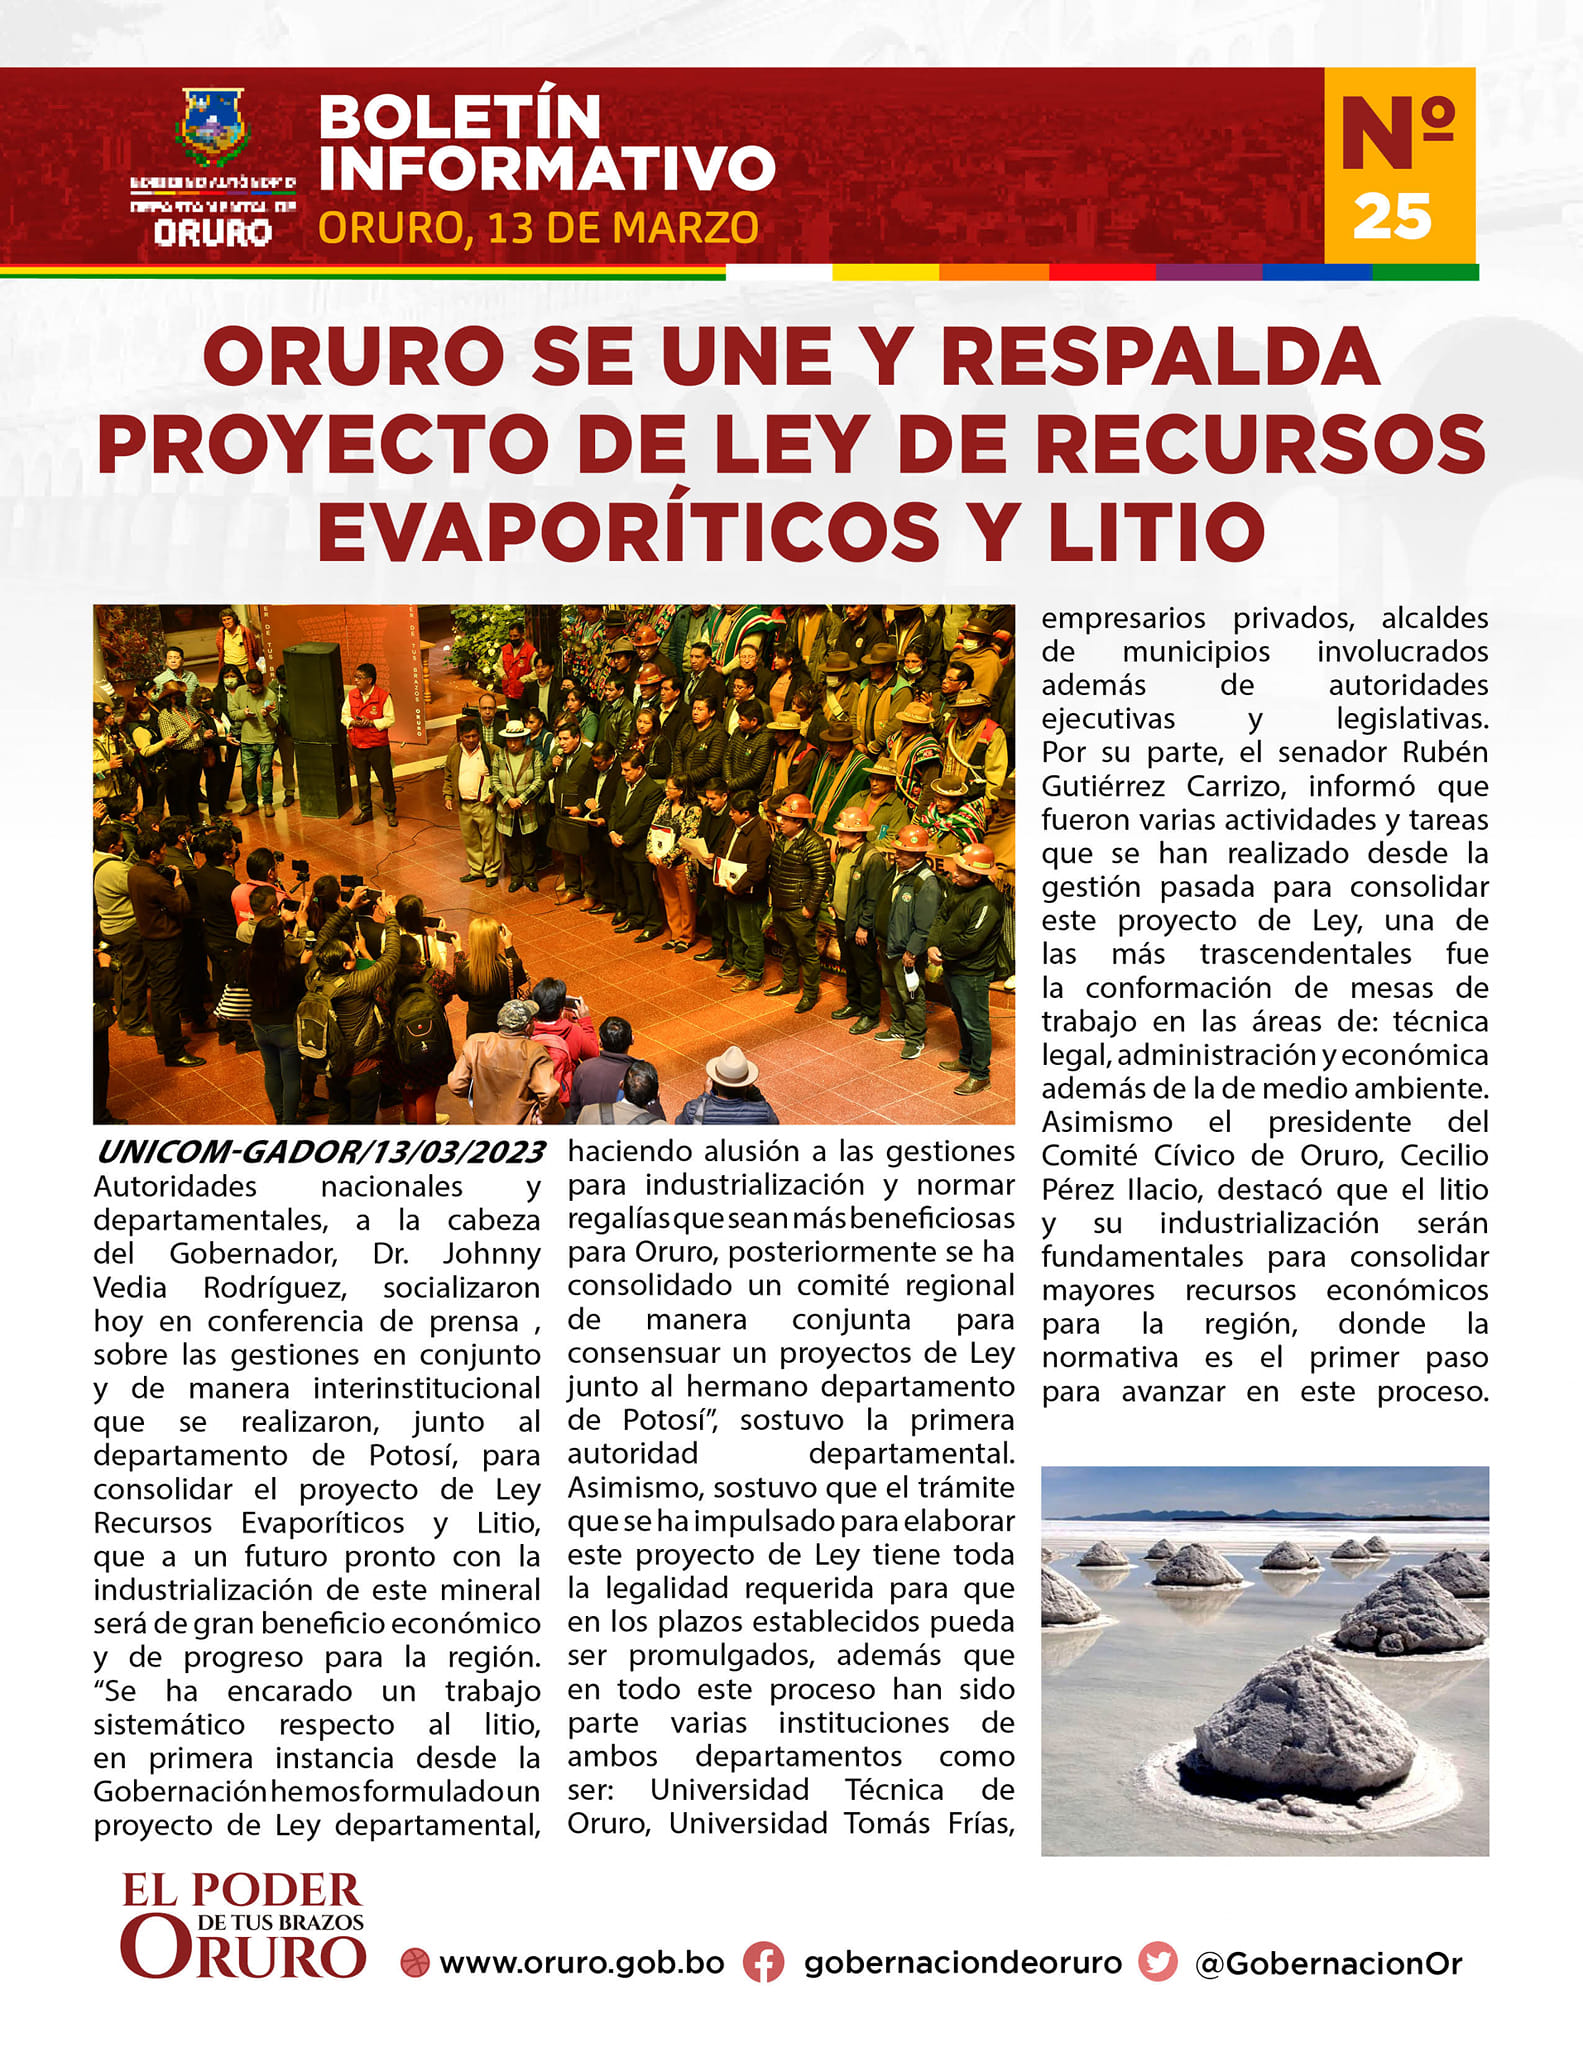 Oruro se une y respalda proyecto de Ley de recursos evaporíticos y litio